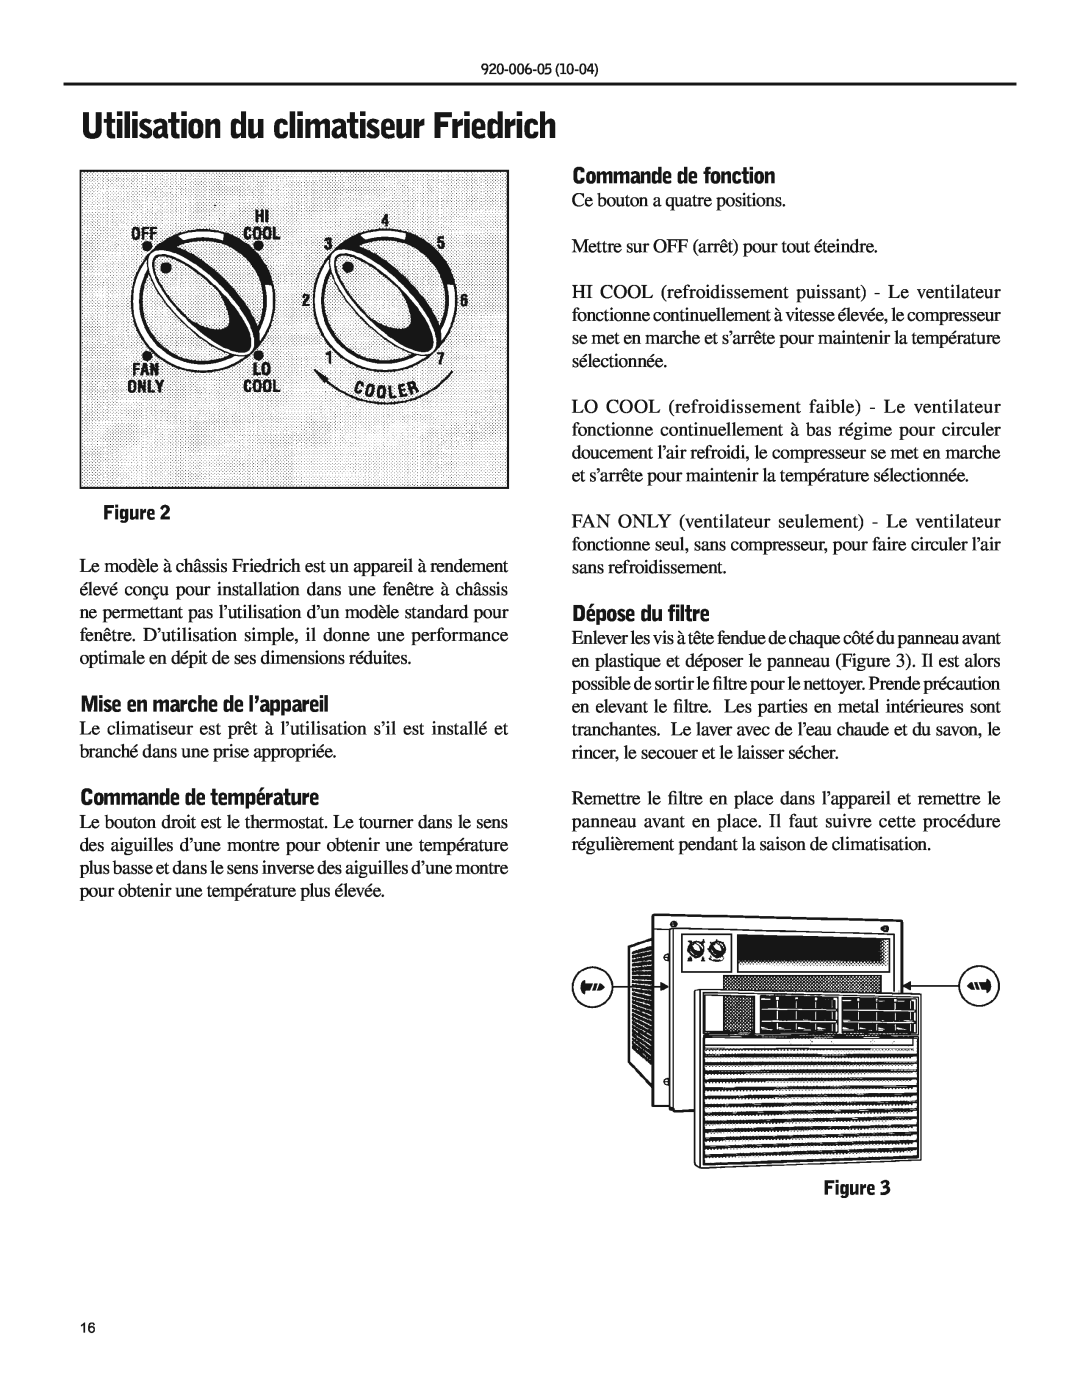 Friedrich SC06 manual Mise en marche de l’appareil, Commande de température, Commande de fonction, Dépose du filtre 